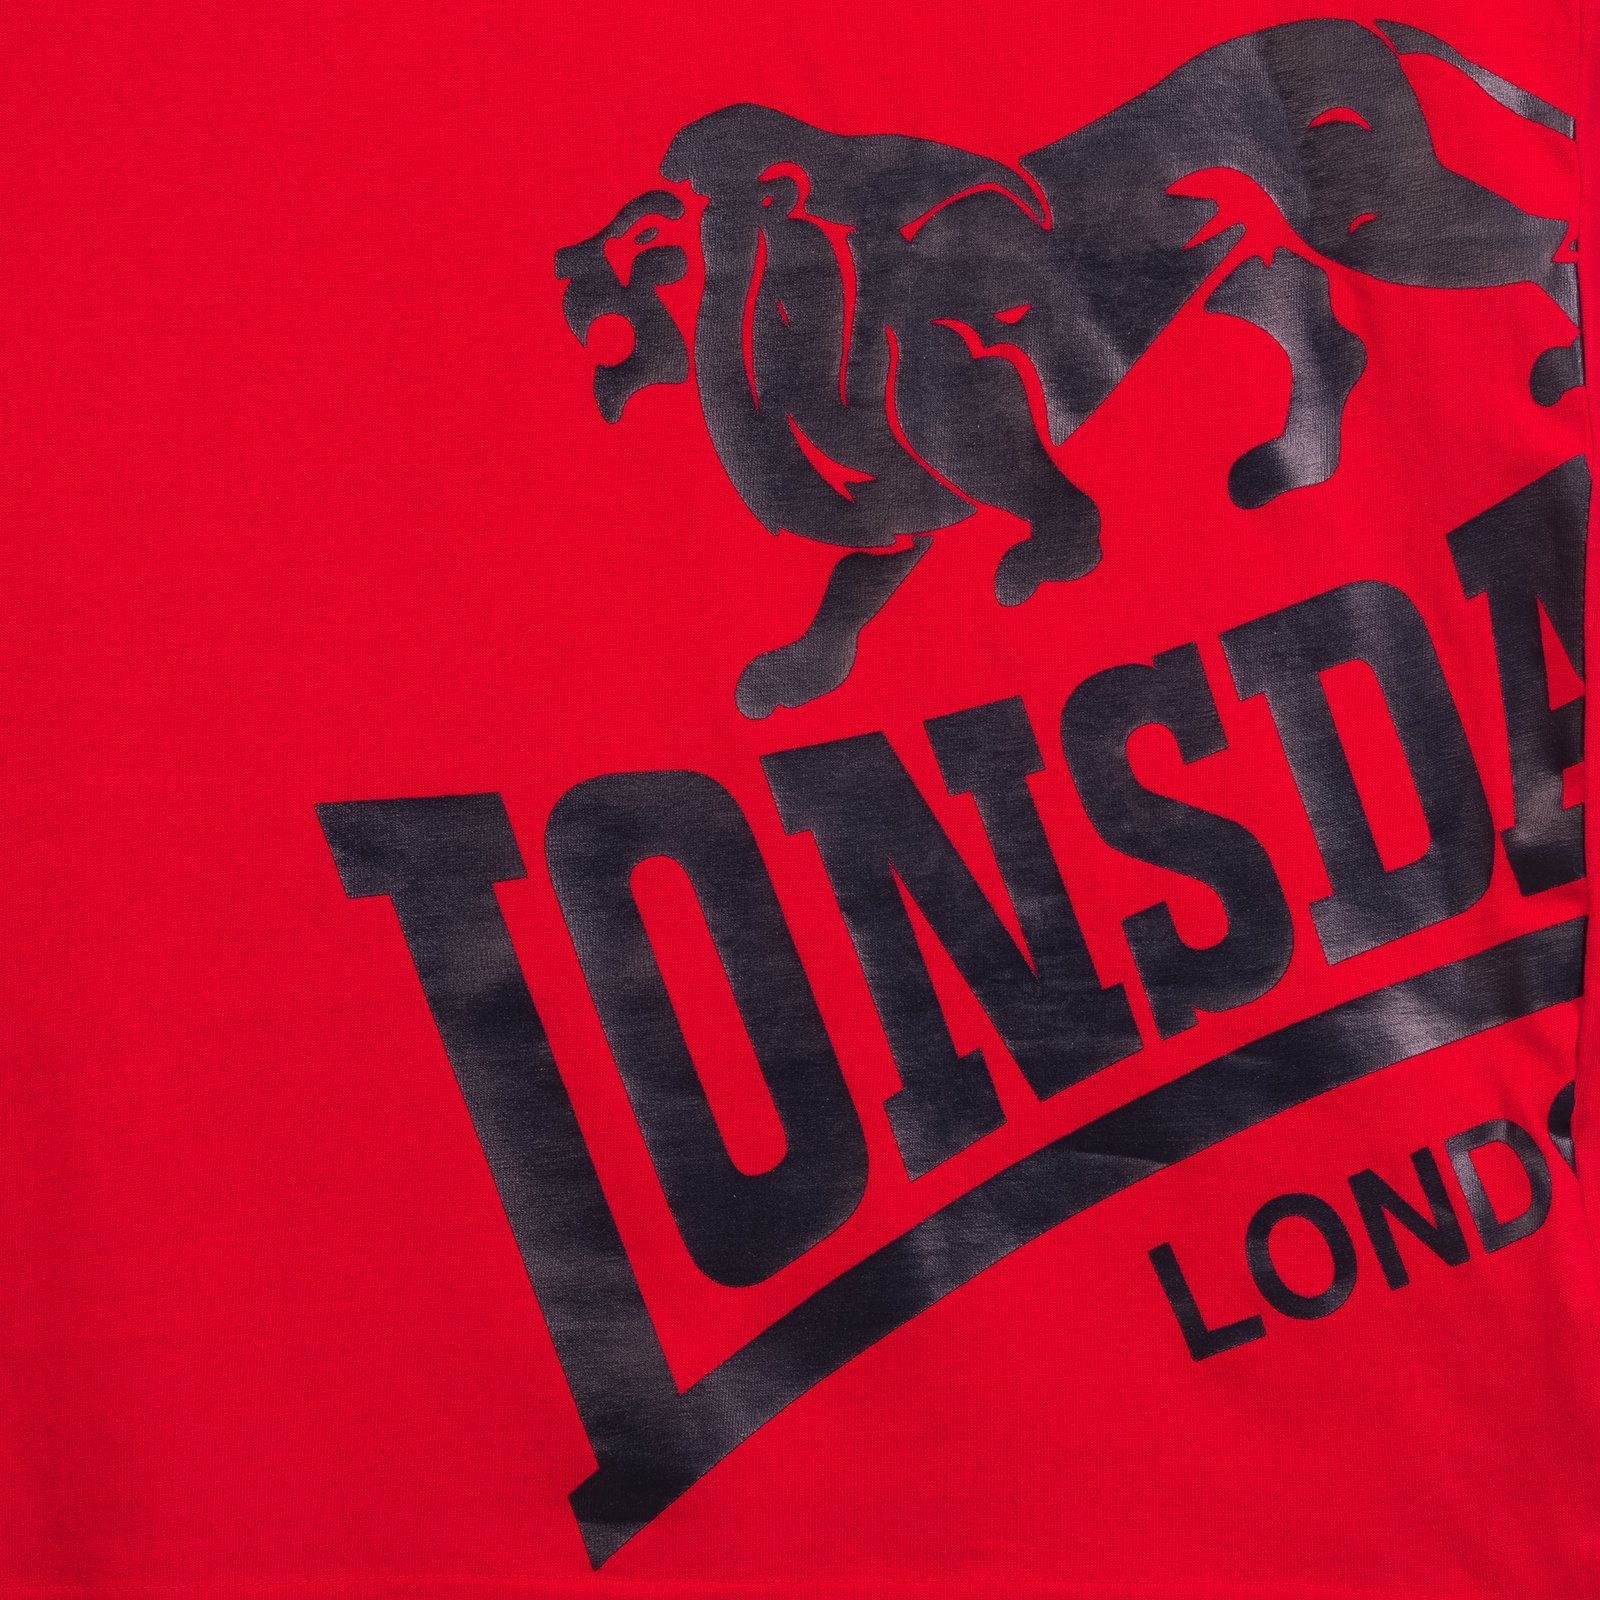 Red T-Shirt DEREHAM Lonsdale